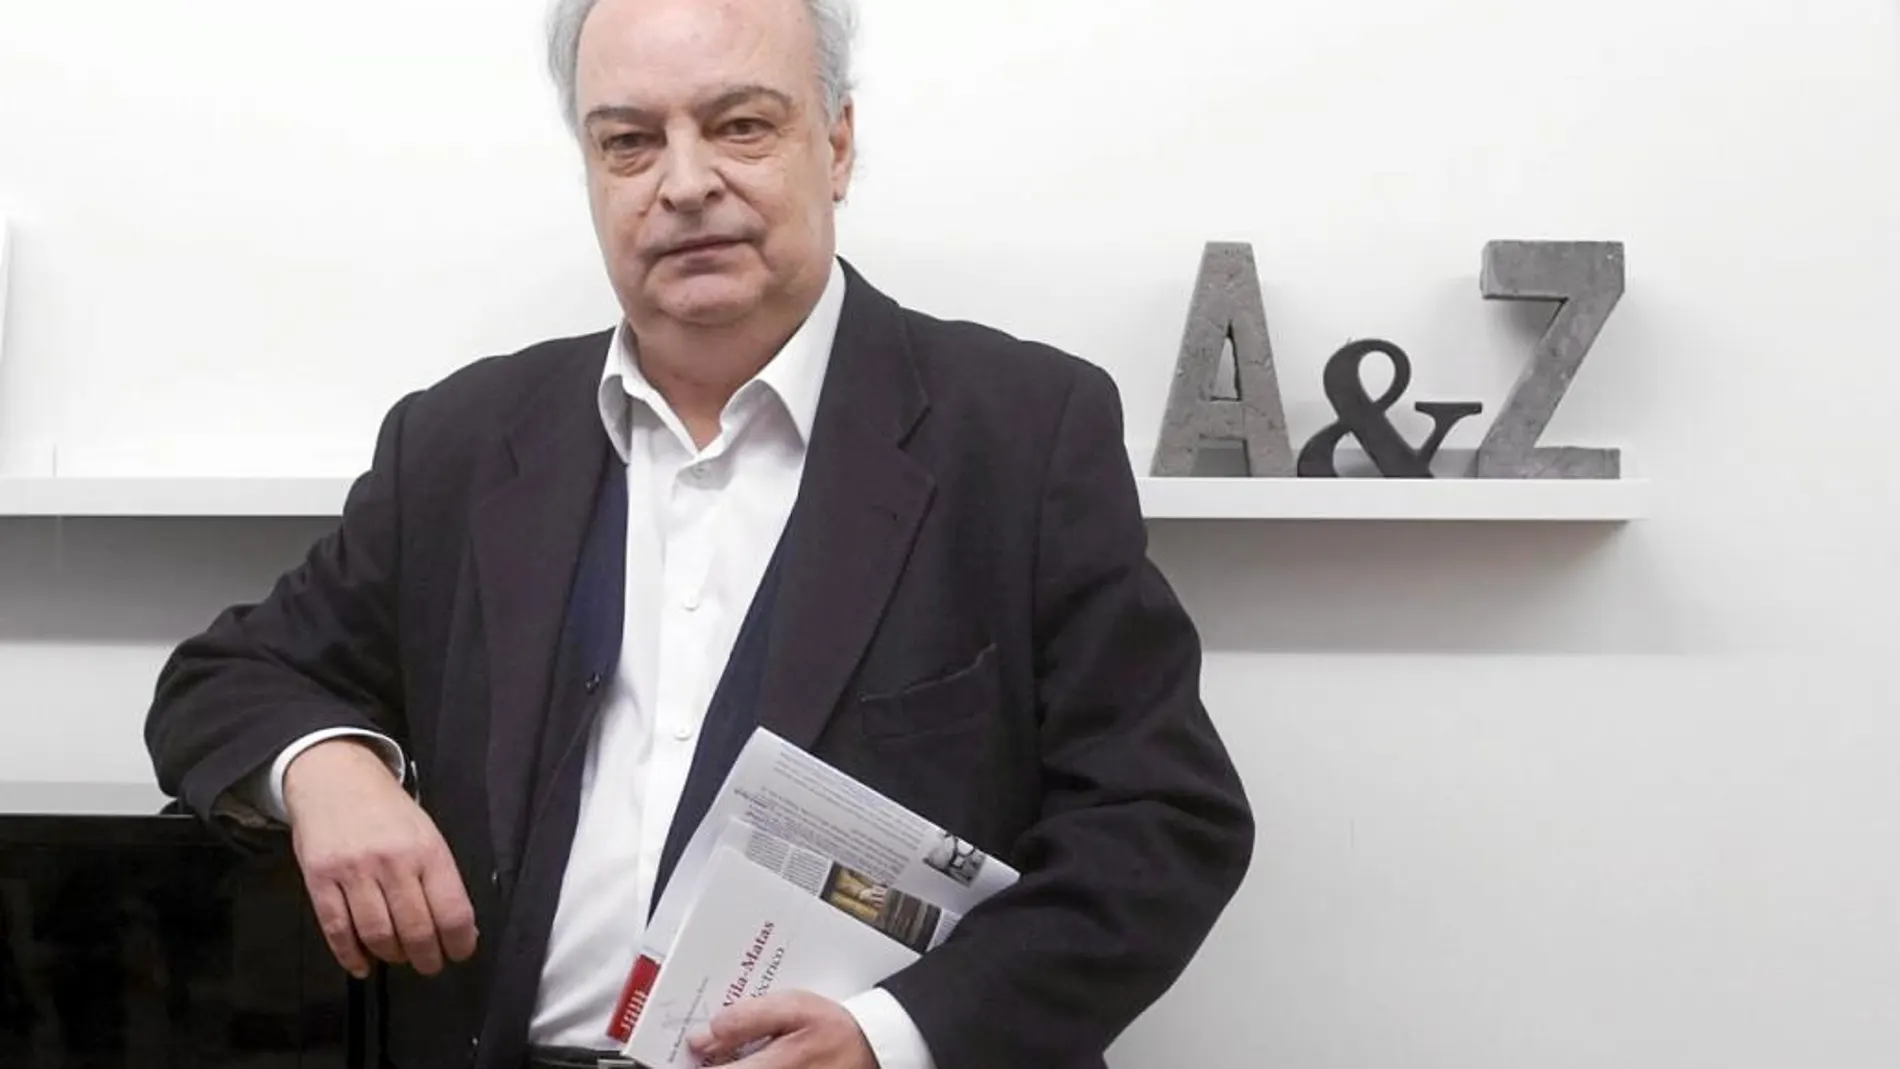 El escritor Enrique Vila-Matas durante la presentación de su último libro "Marienbad eléctrico"